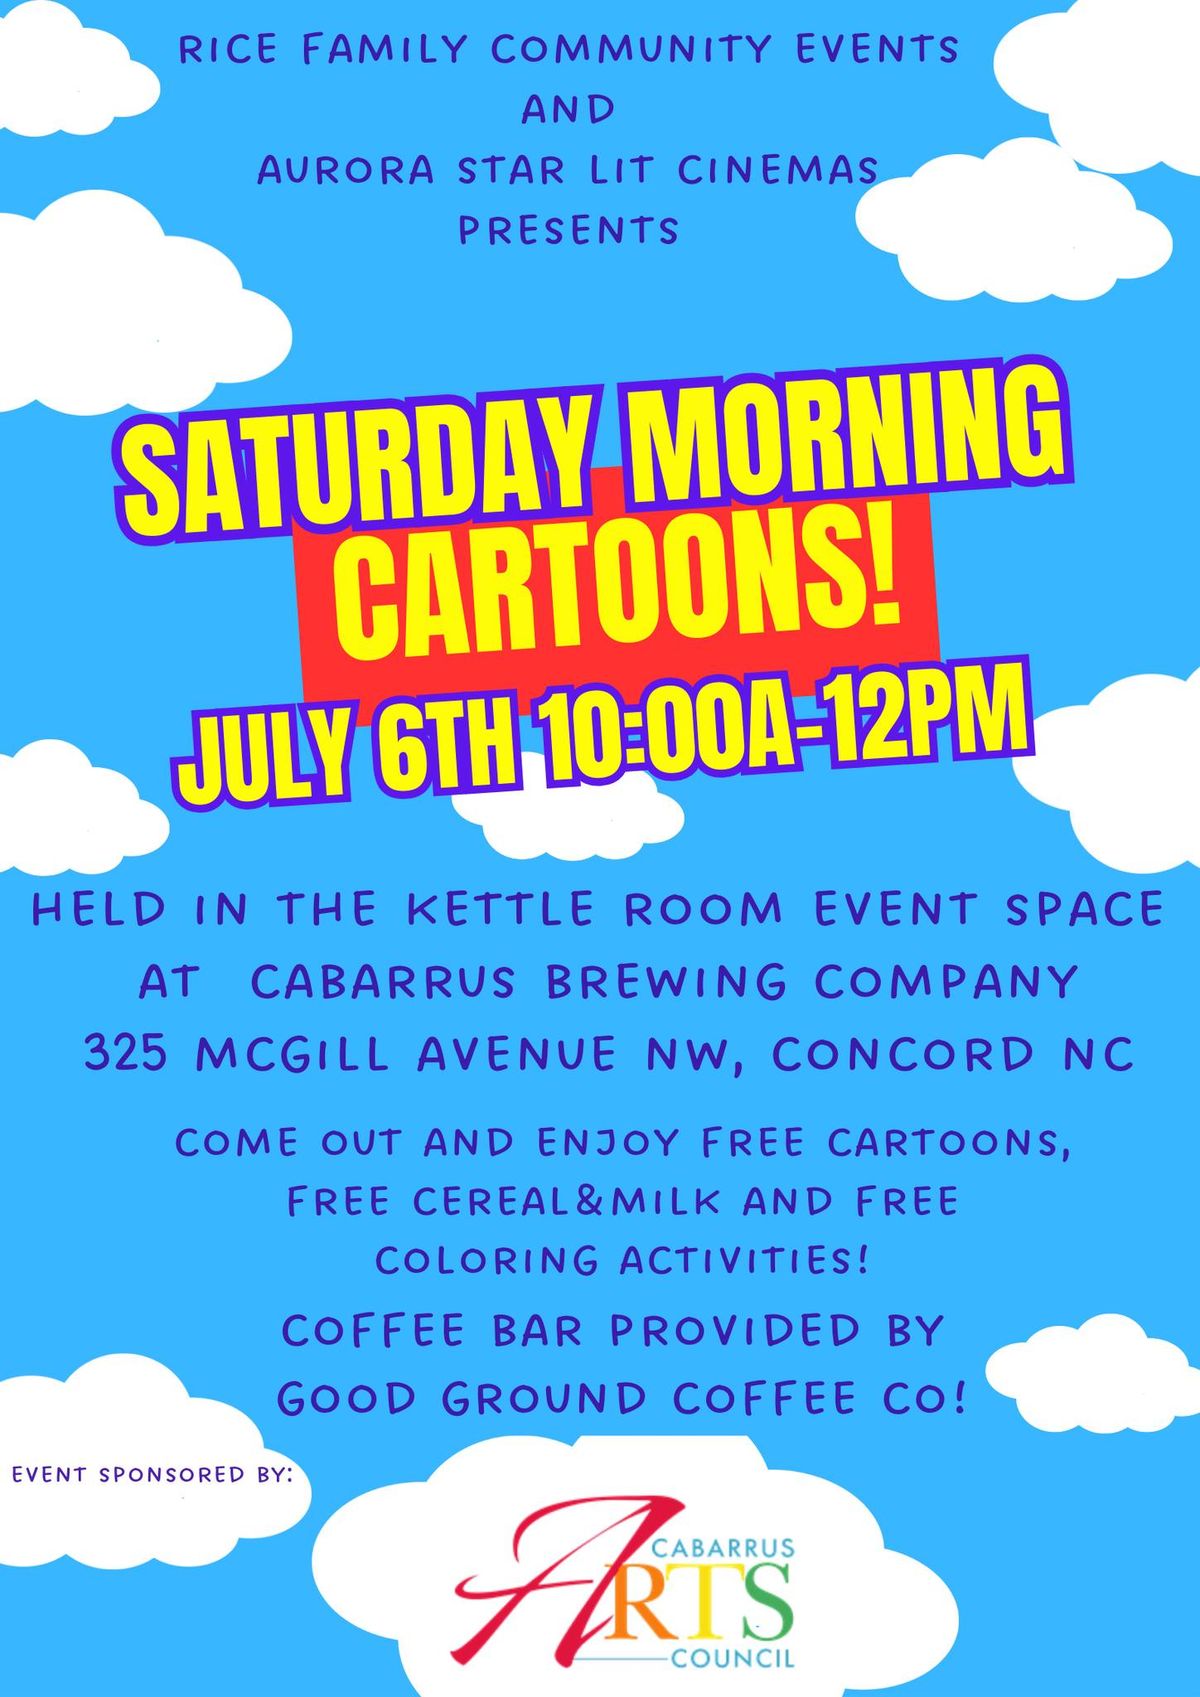 RETRO CABARRUS SATURDAY MORNING CARTOON EVENT PART 2!